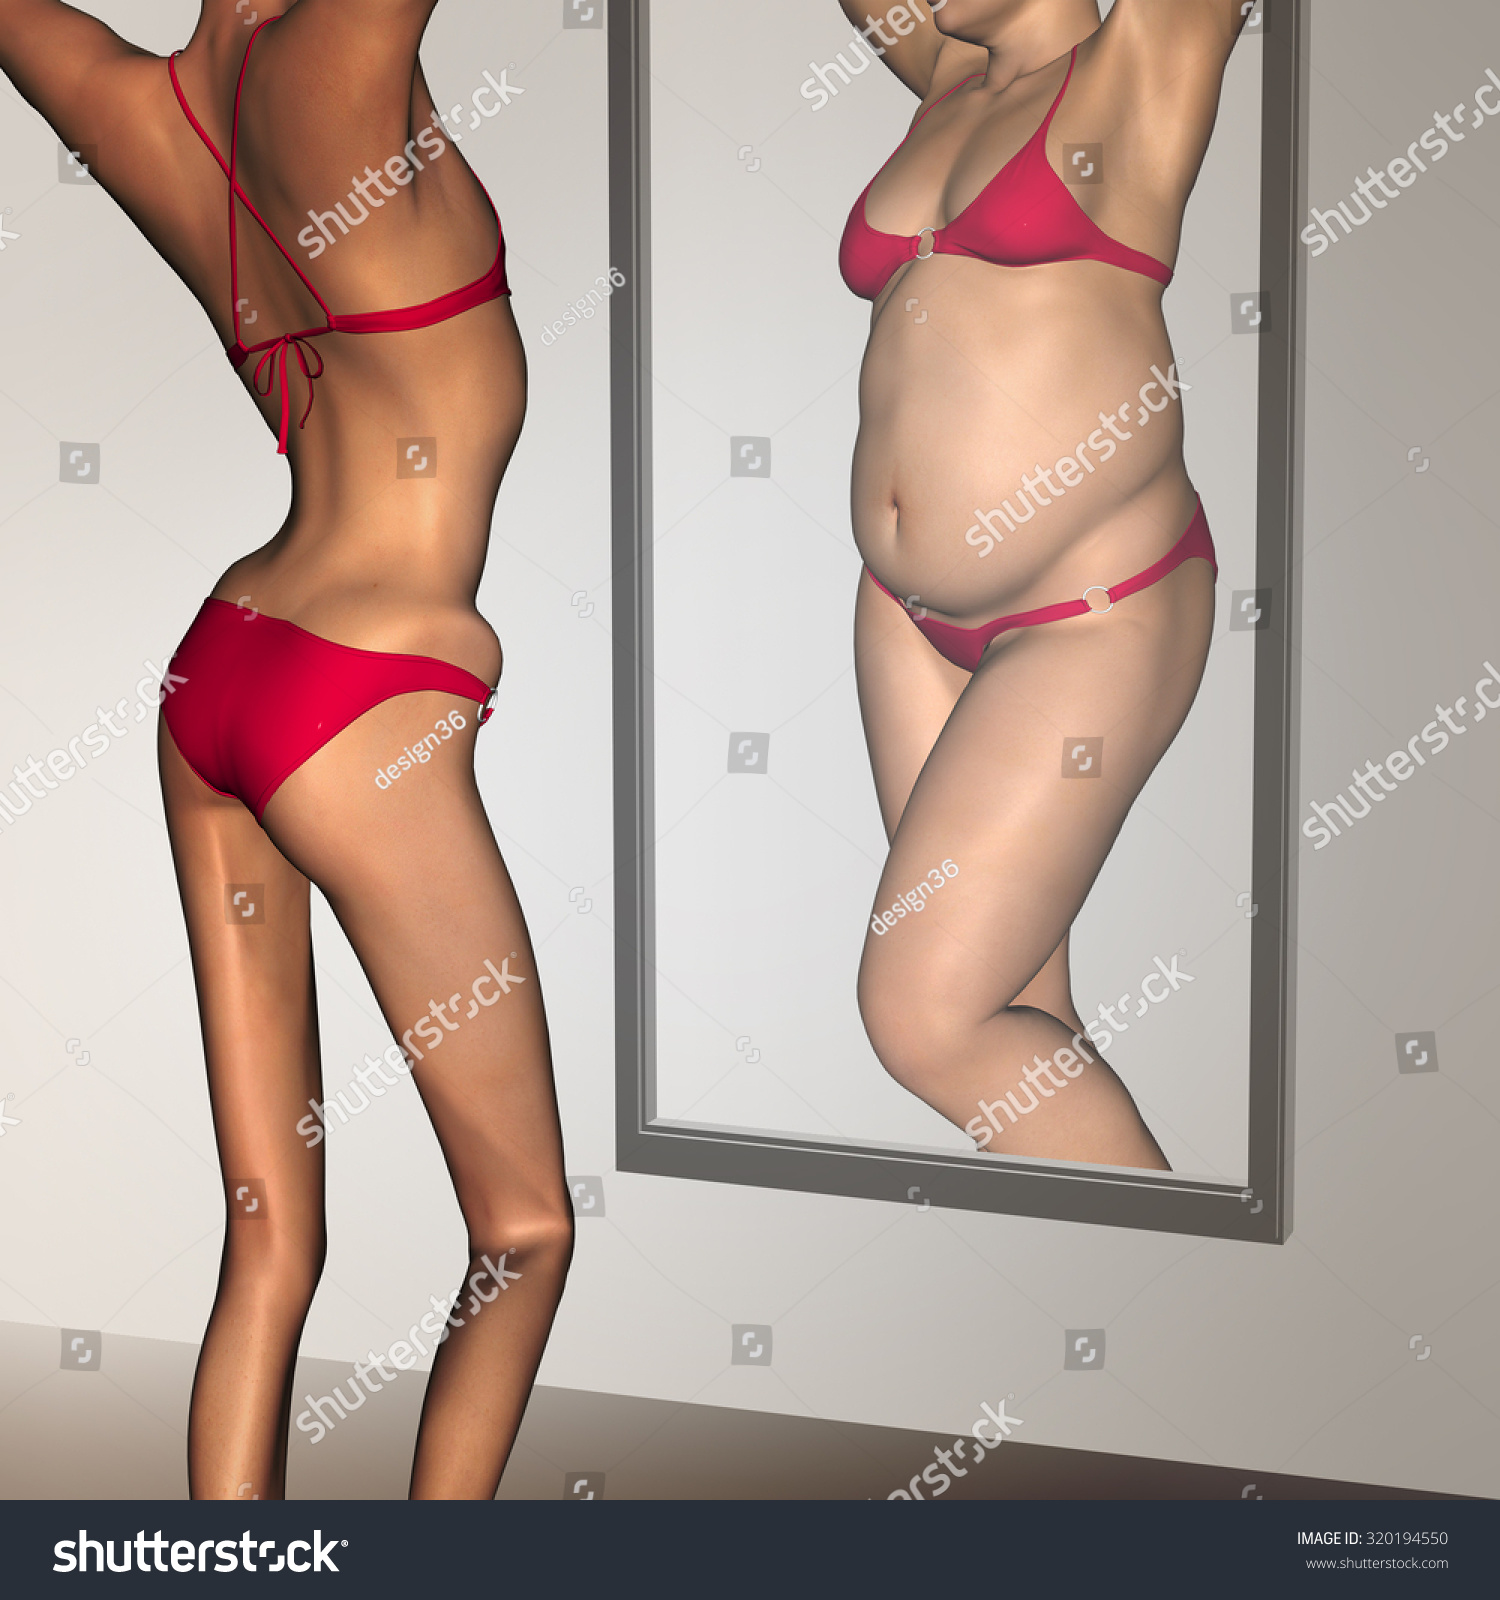 Fat Women Vs Skinny Women 52